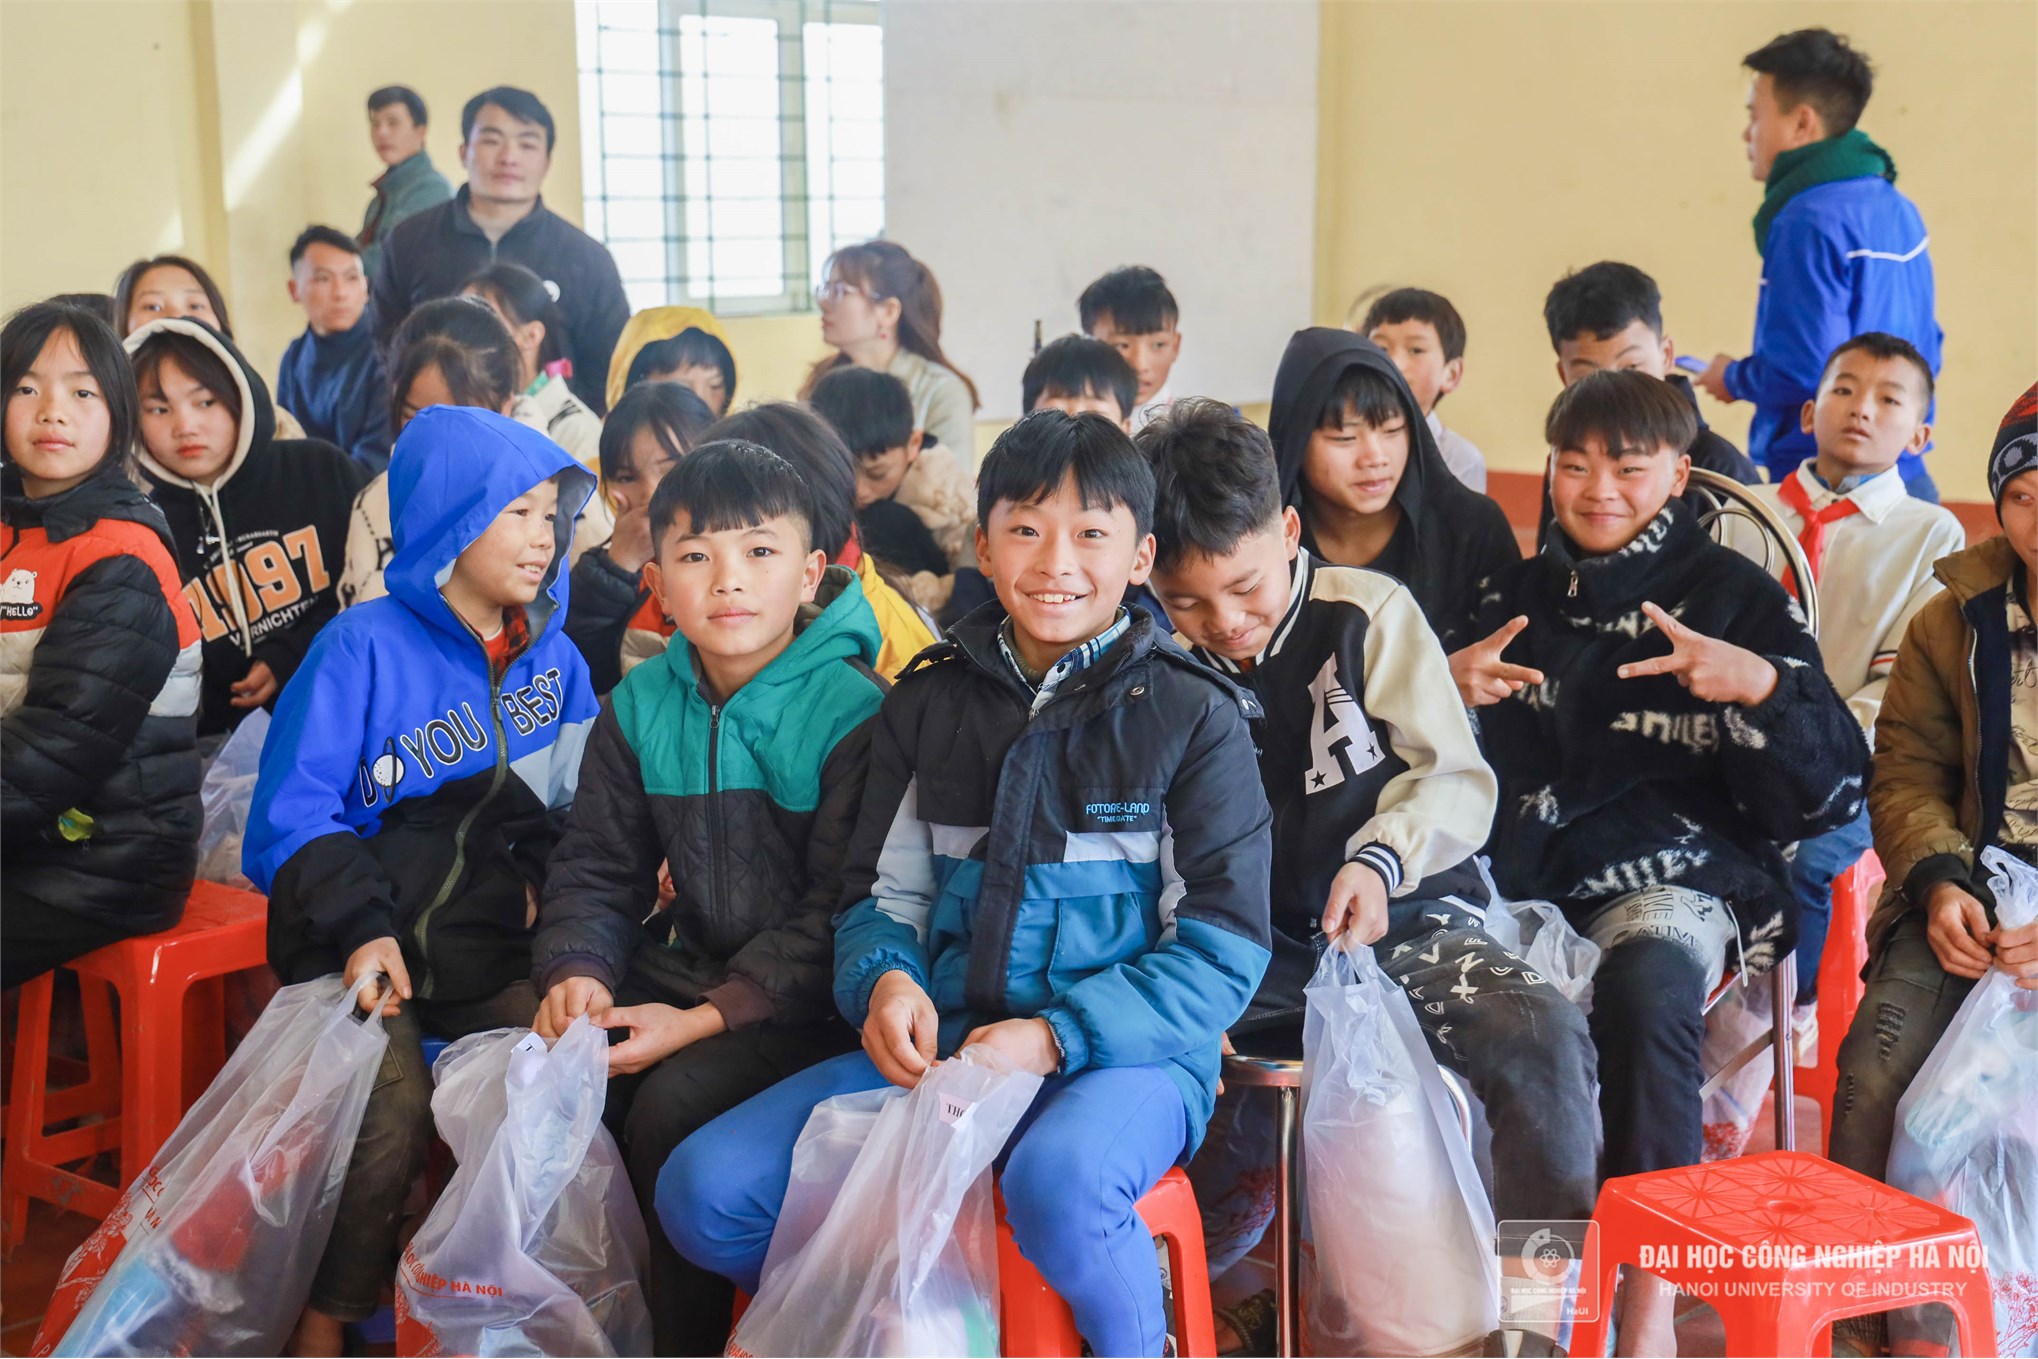 Đông ấm vùng cao: Hành trình cõng áo ấm lên non cho trẻ em nghèo